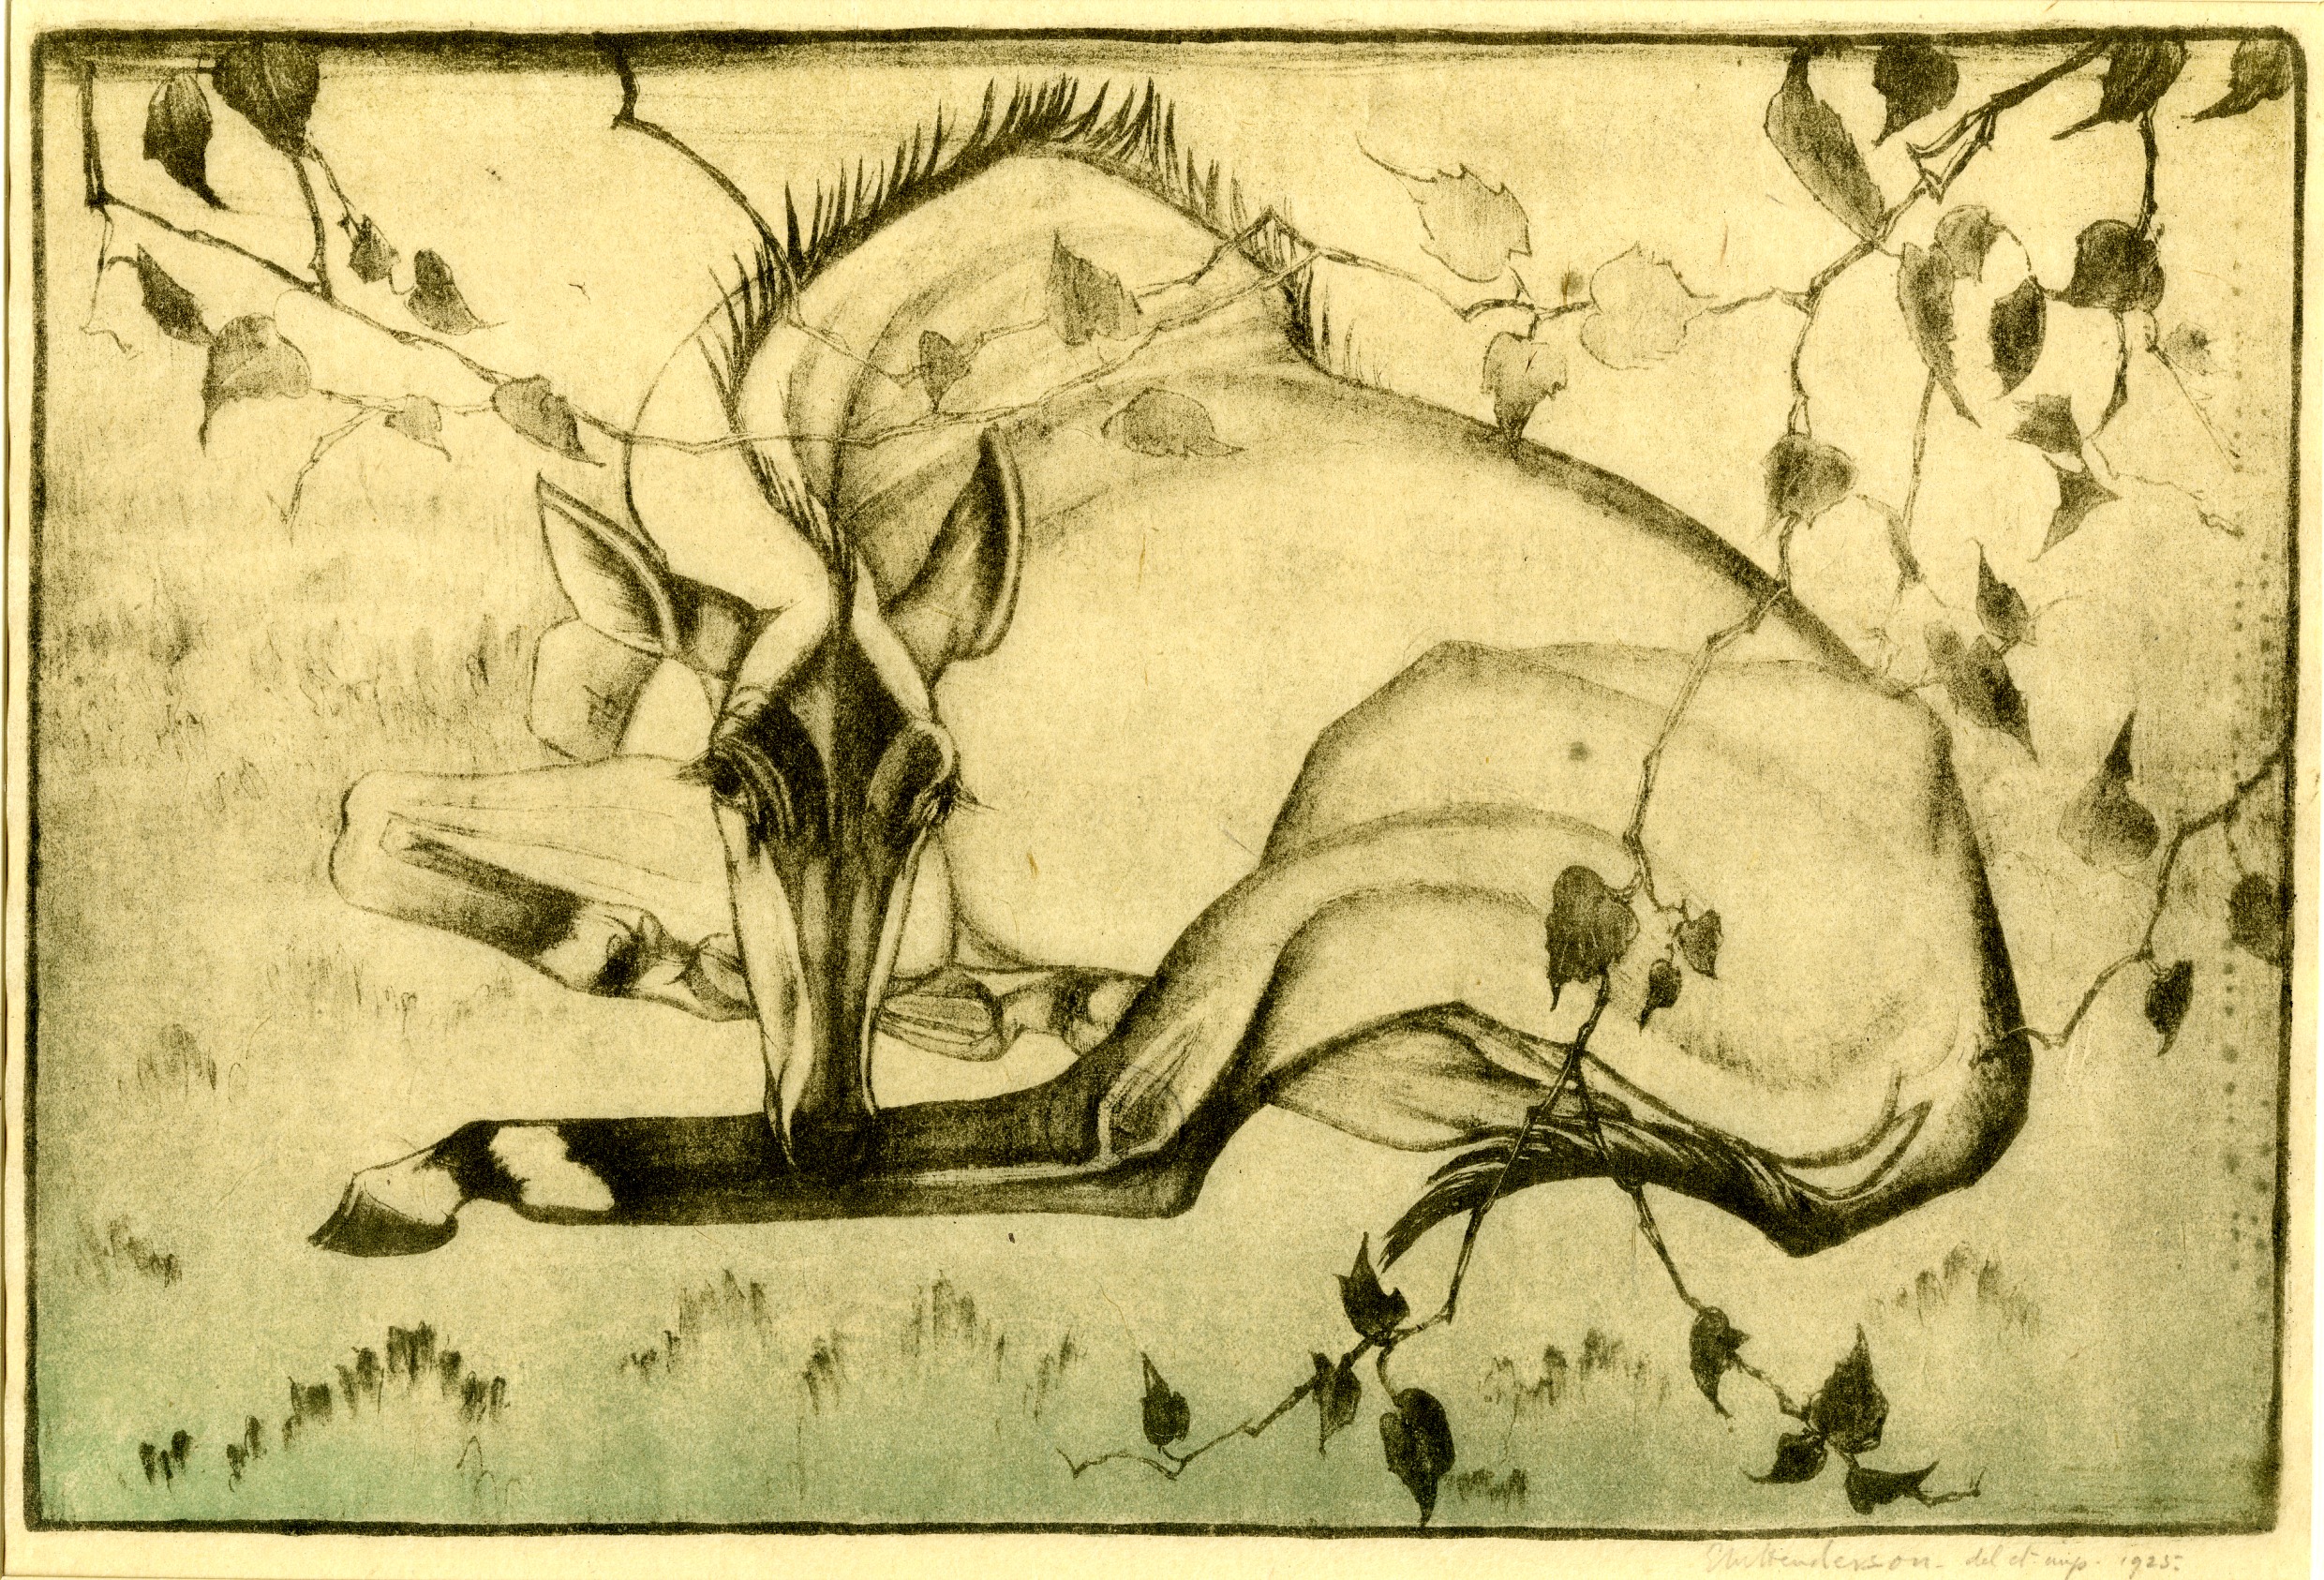 Nilghai (Indian antelope) (1925)